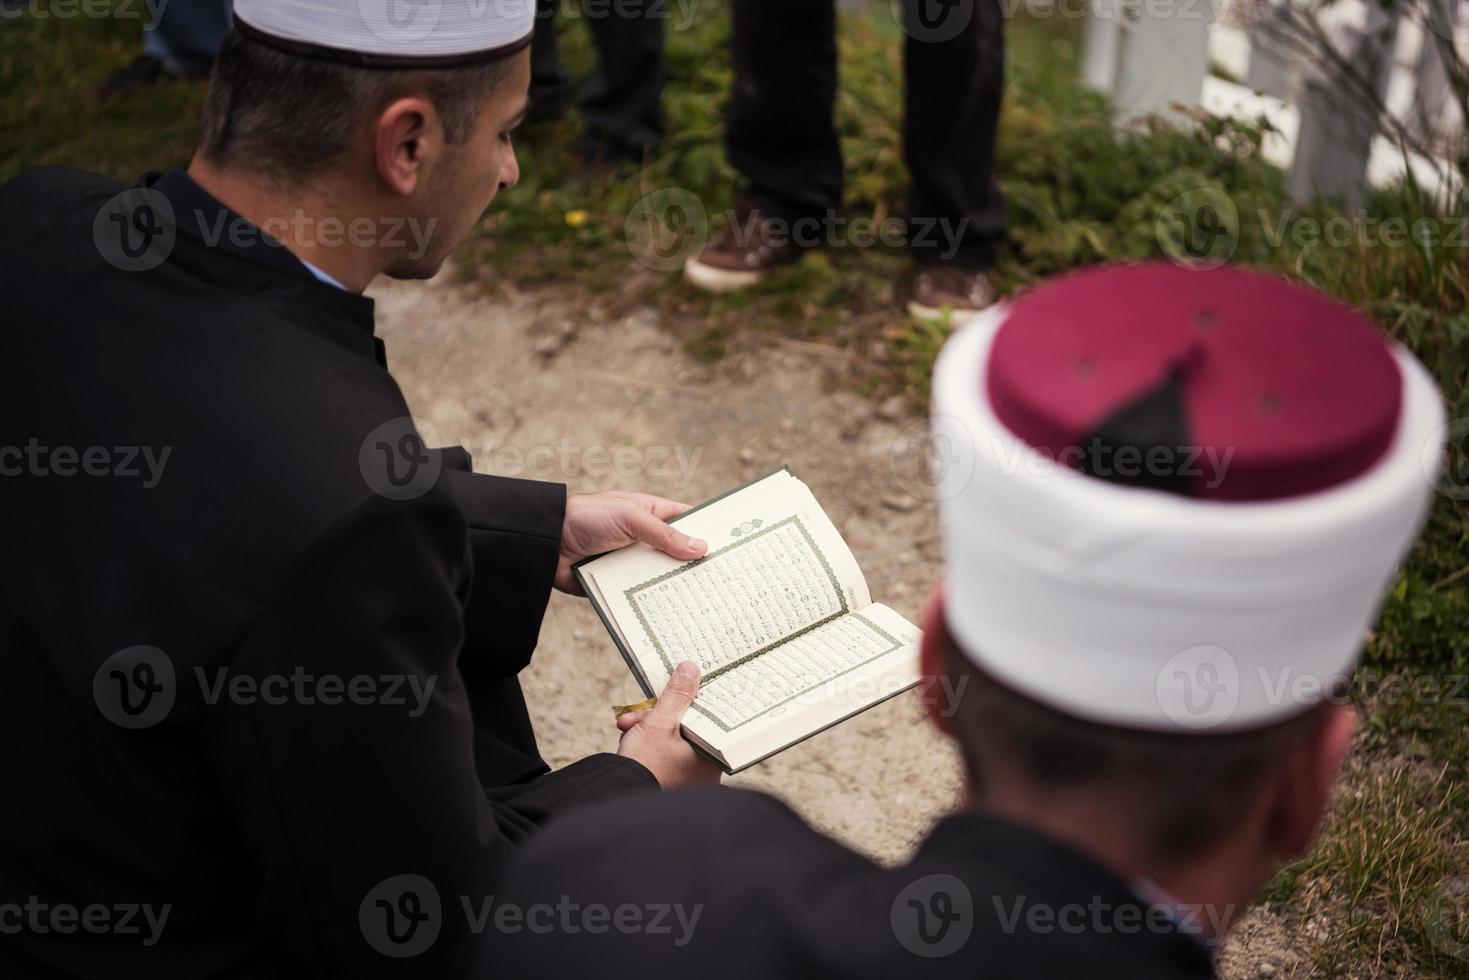 koran heilig boek lezing door imam Aan Islamitisch begrafenis foto